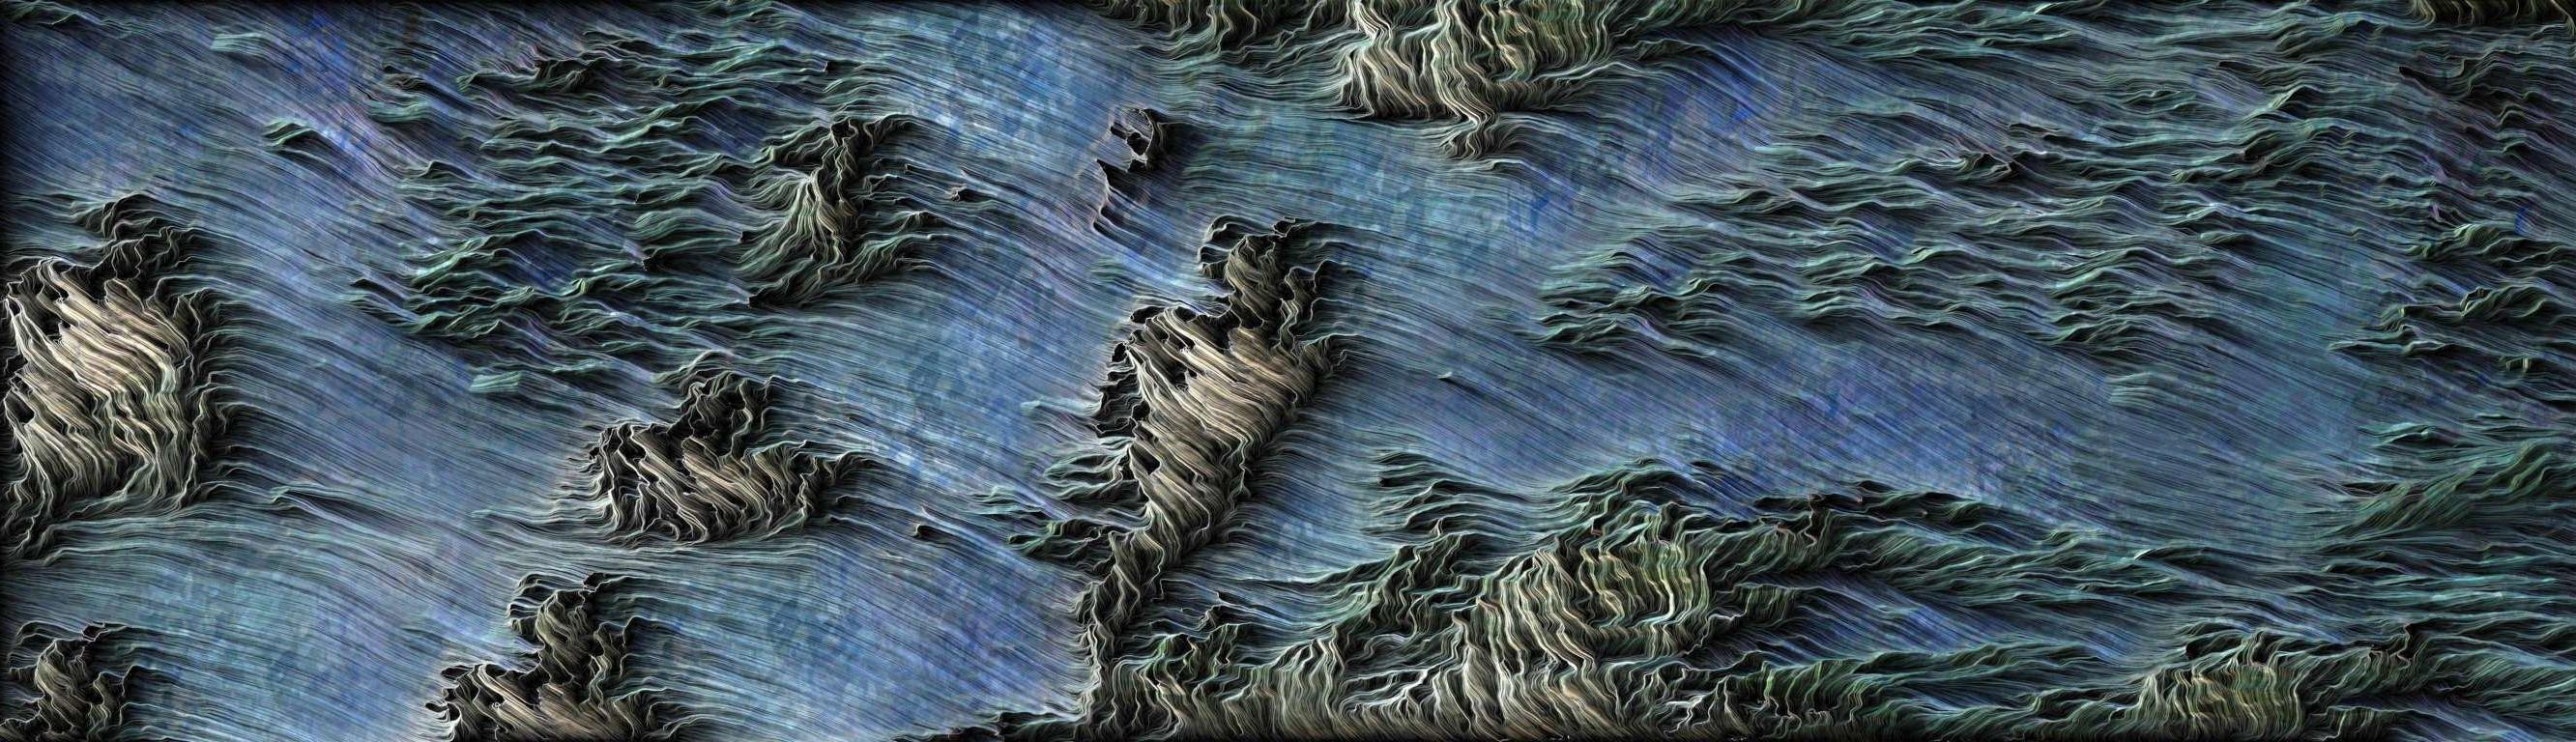 Peruvian Streams, œuvre d'art numérique abstraite en bleu, gravée sur aluminium